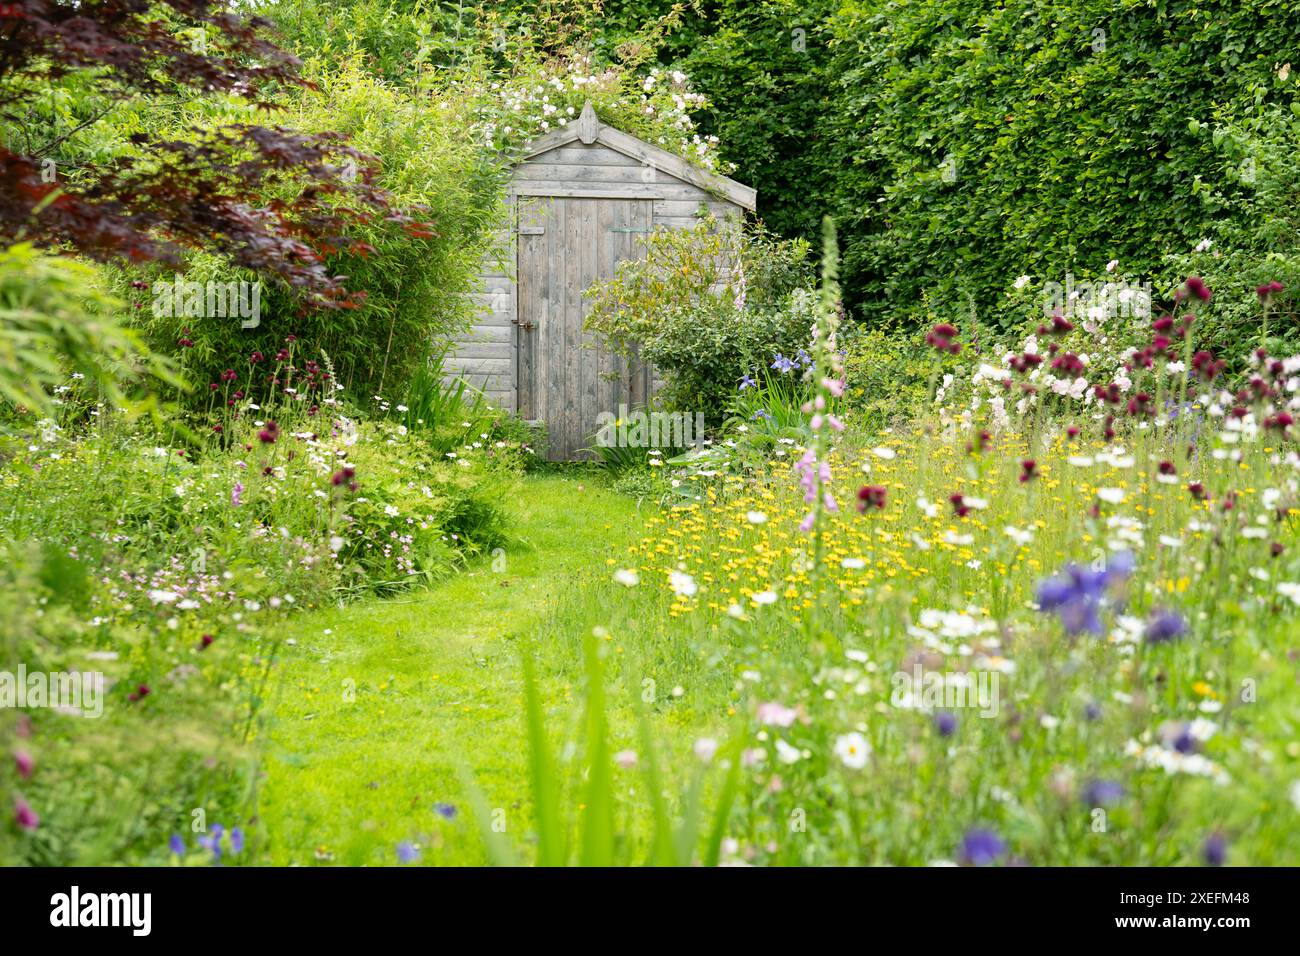 Wildtierfreundlicher Garten mit Weg, der durch blühenden Rasen gemäht wird, und nektarreichen Blumen in dicht bepflanzten Borders, Schottland, Großbritannien Stockfoto